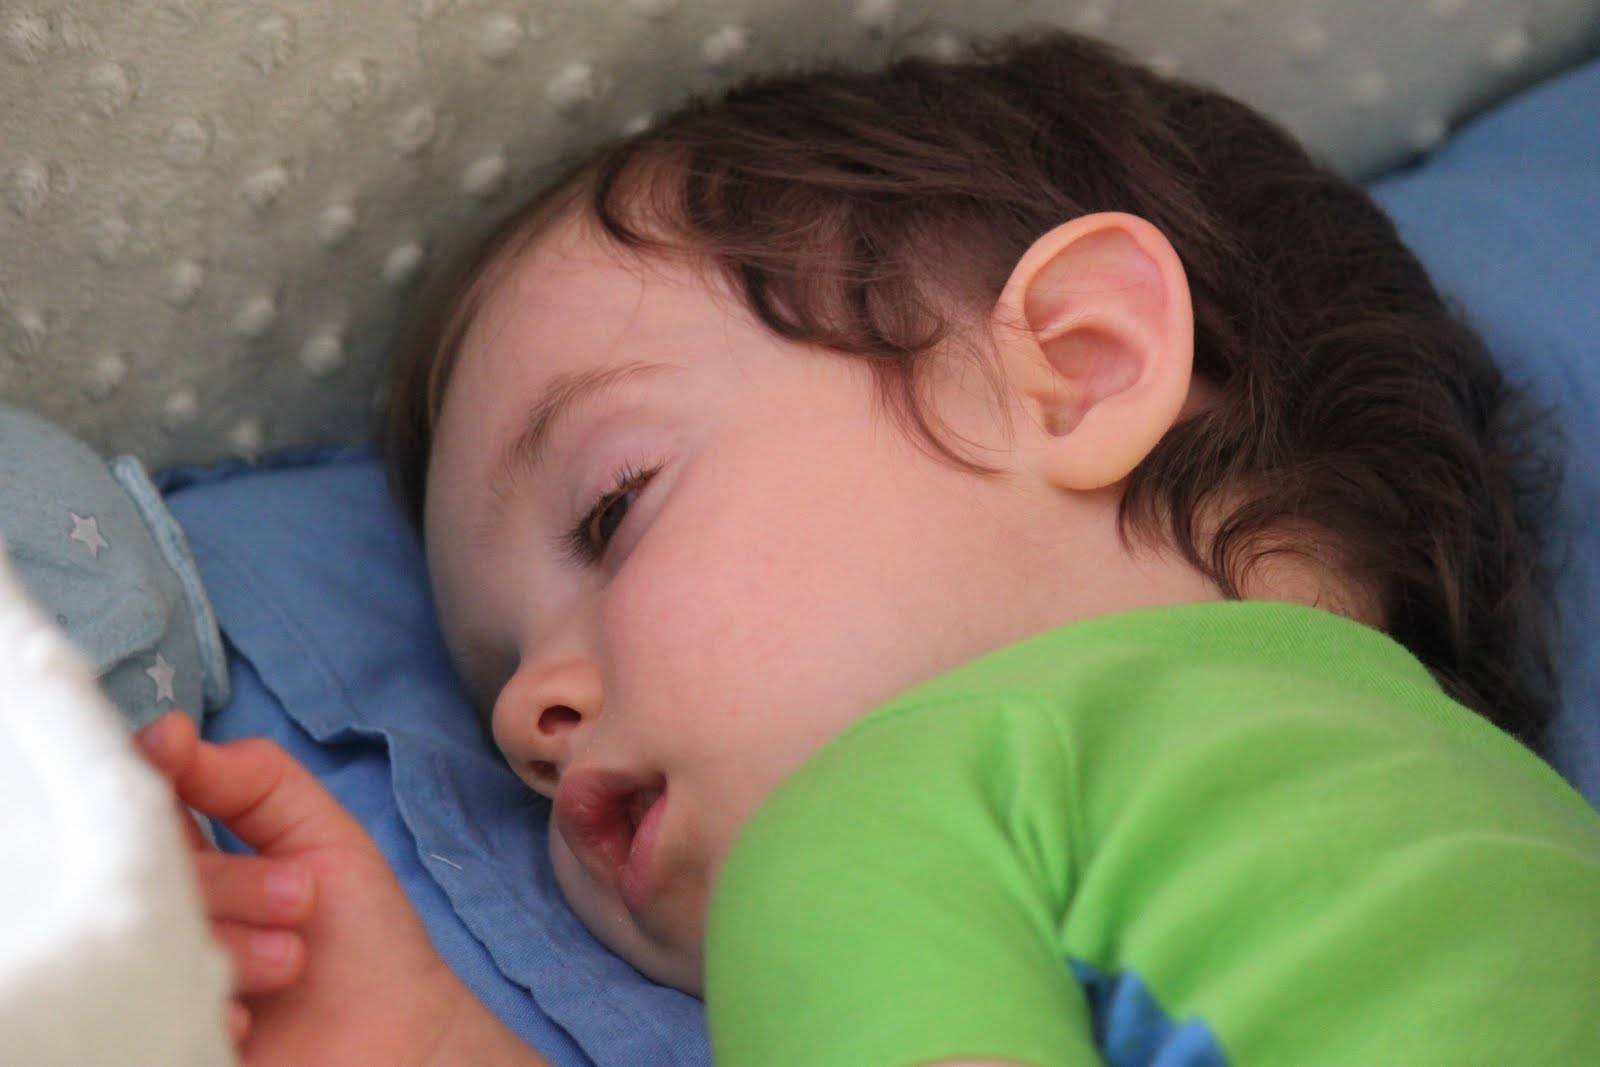 Почему во сне новорожденный закатывает глаза и когда беспокоиться?